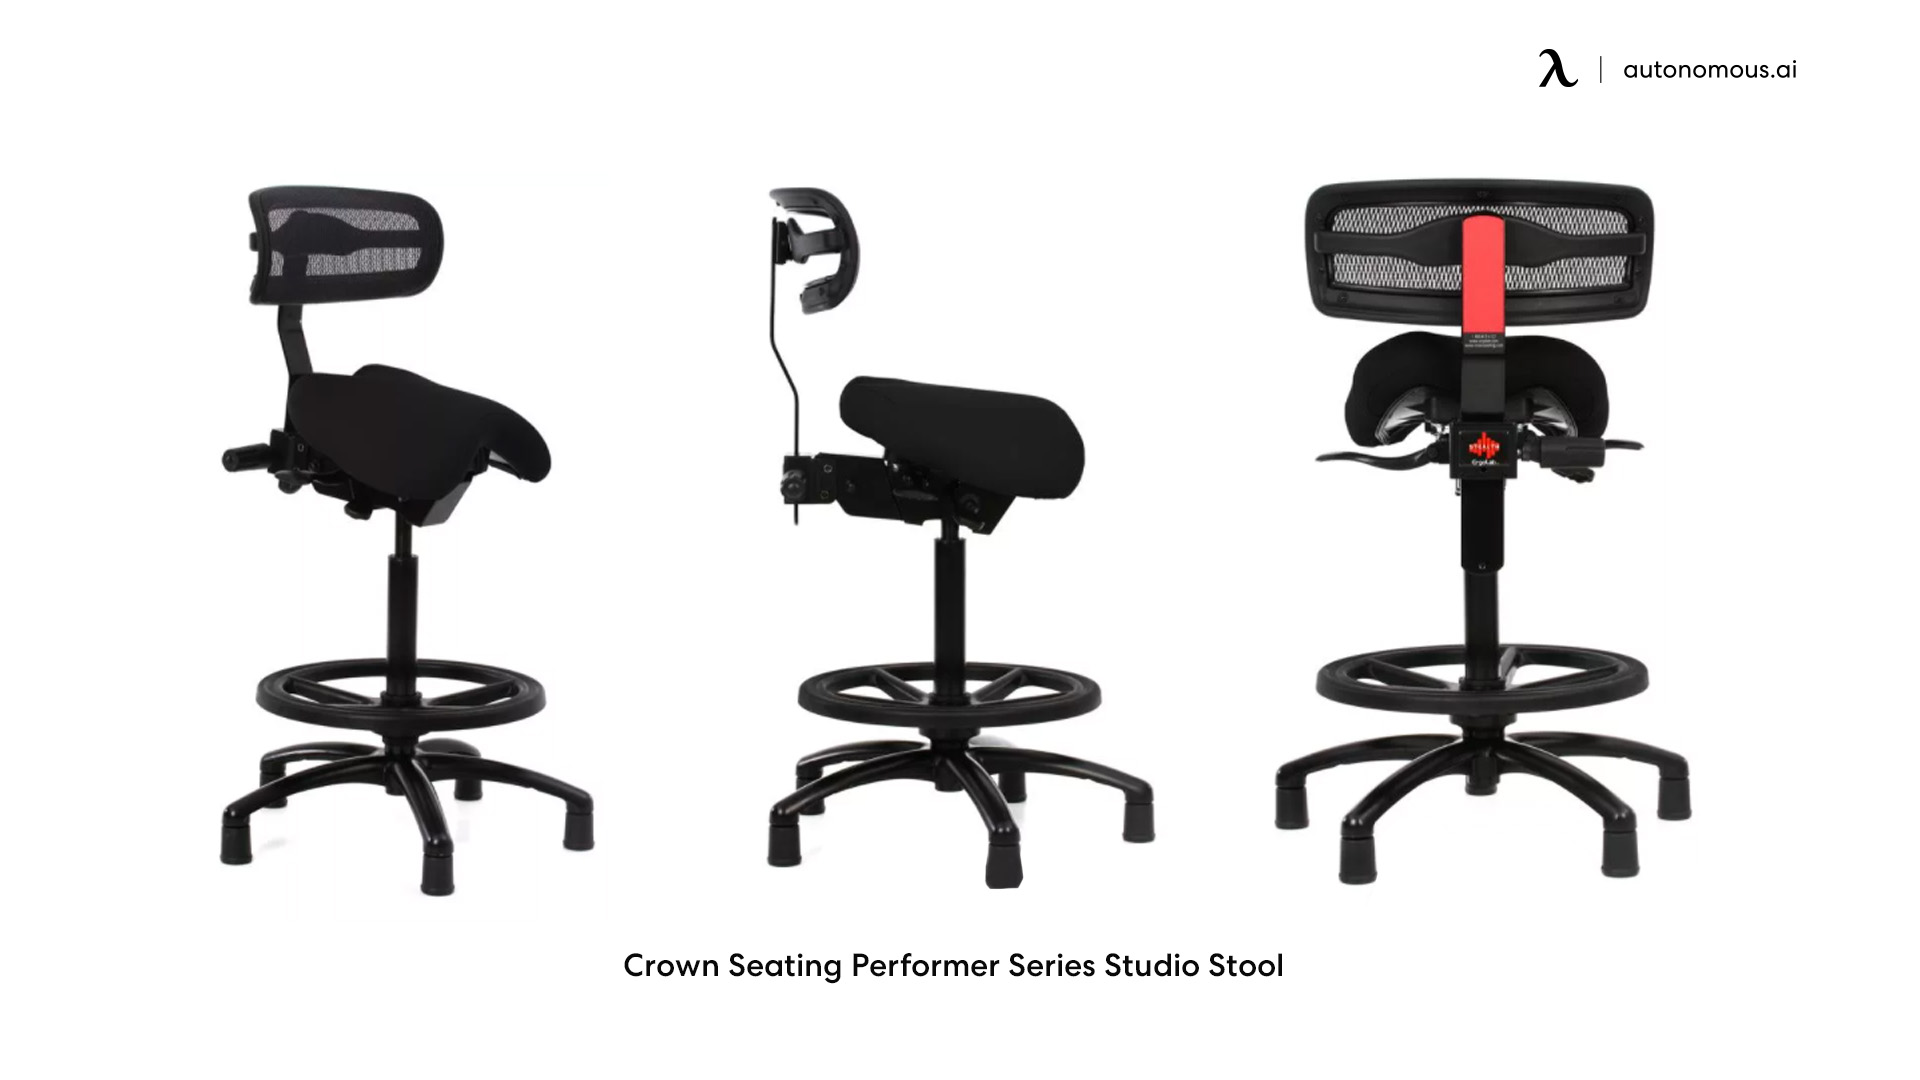 Crown Seating Performer Series Studio Stool